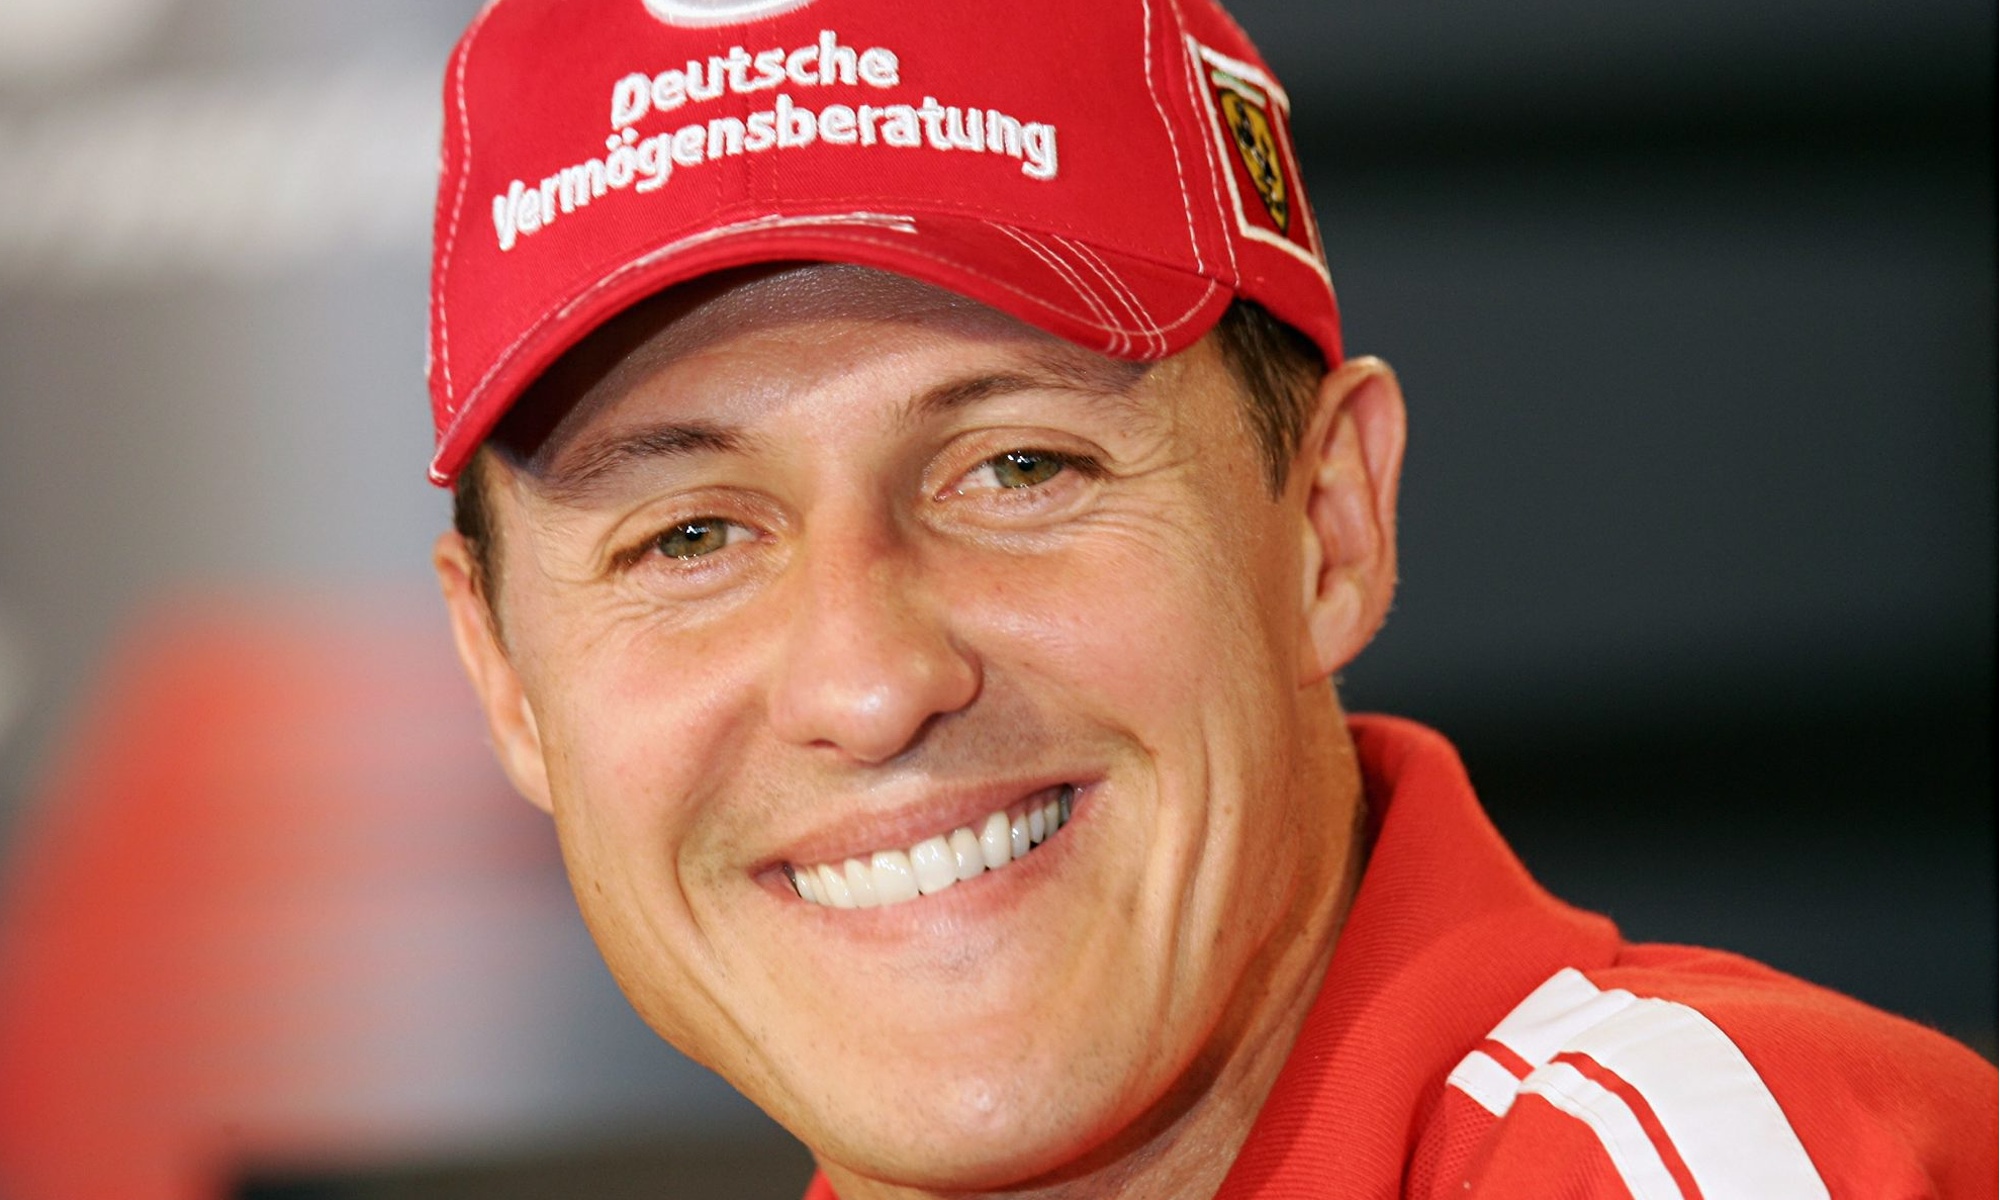 Михаел Шумахер, радост, син, кариера, пилот, Формула 1, инцидент